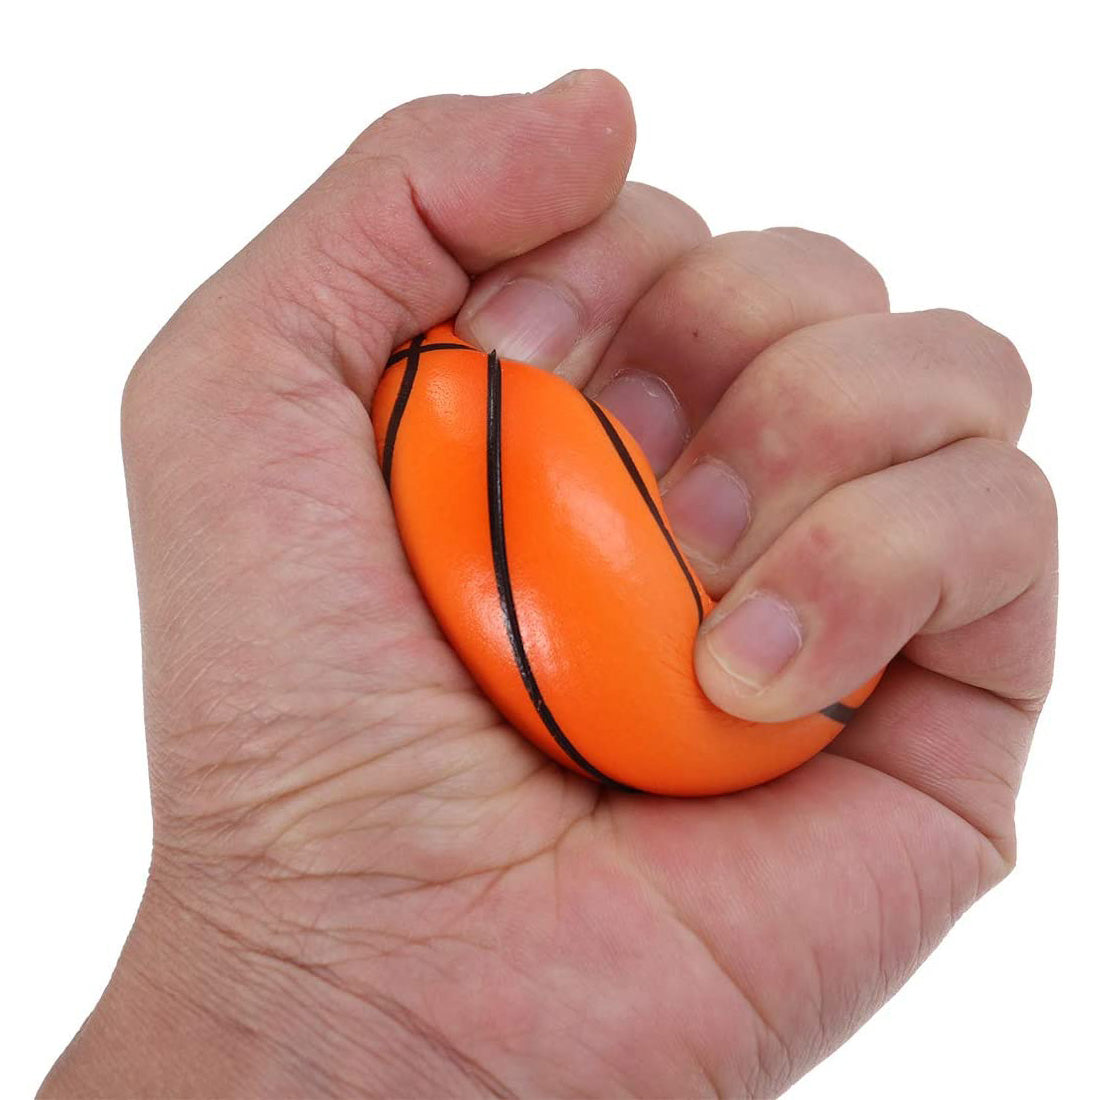 HUSL Bolas de Goma de Rebote con correa para el dedo y cuerda elástica, Bolas de deportes de goma suave, pelota para jugar en zona interior y aire libre, diseñado para los niños-Diámetro approx.6.3 cm(Sandía)